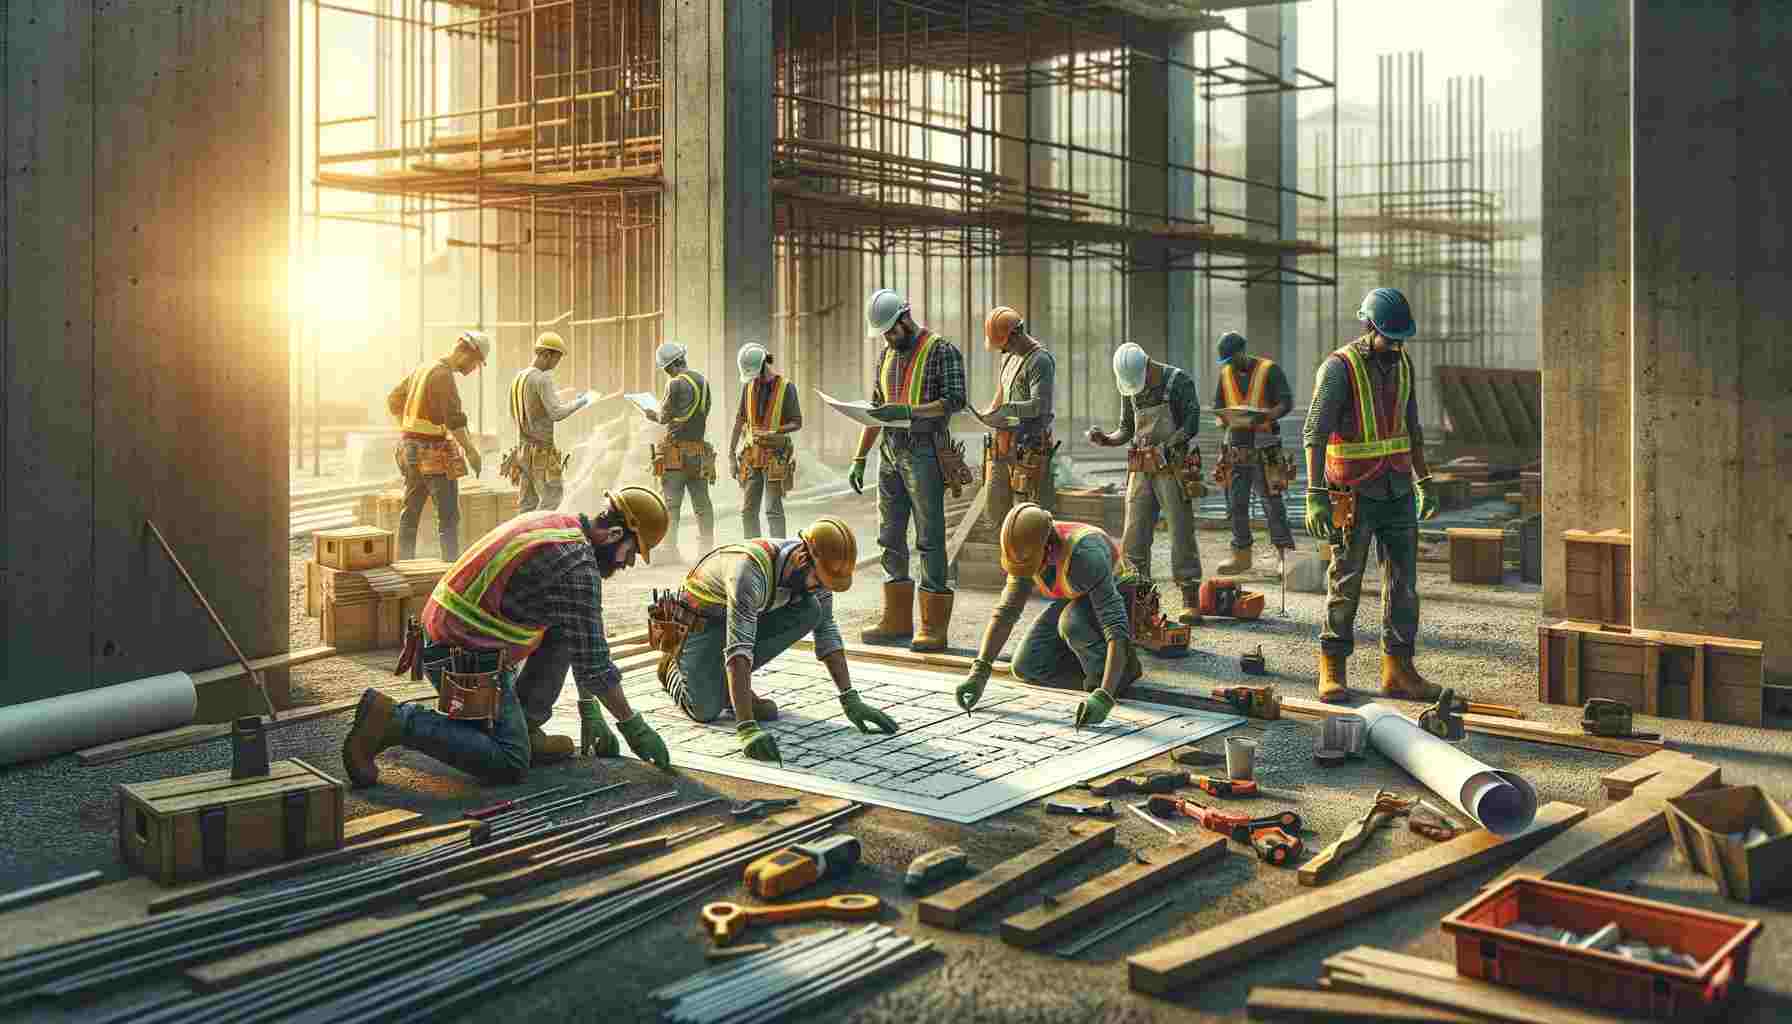 egy kép, amely egy építkezésen dolgozó, fizikai munkát végző személyek kisebb csoportját ábrázolja. Ennek a jelenetnek a középpontjában néhány w